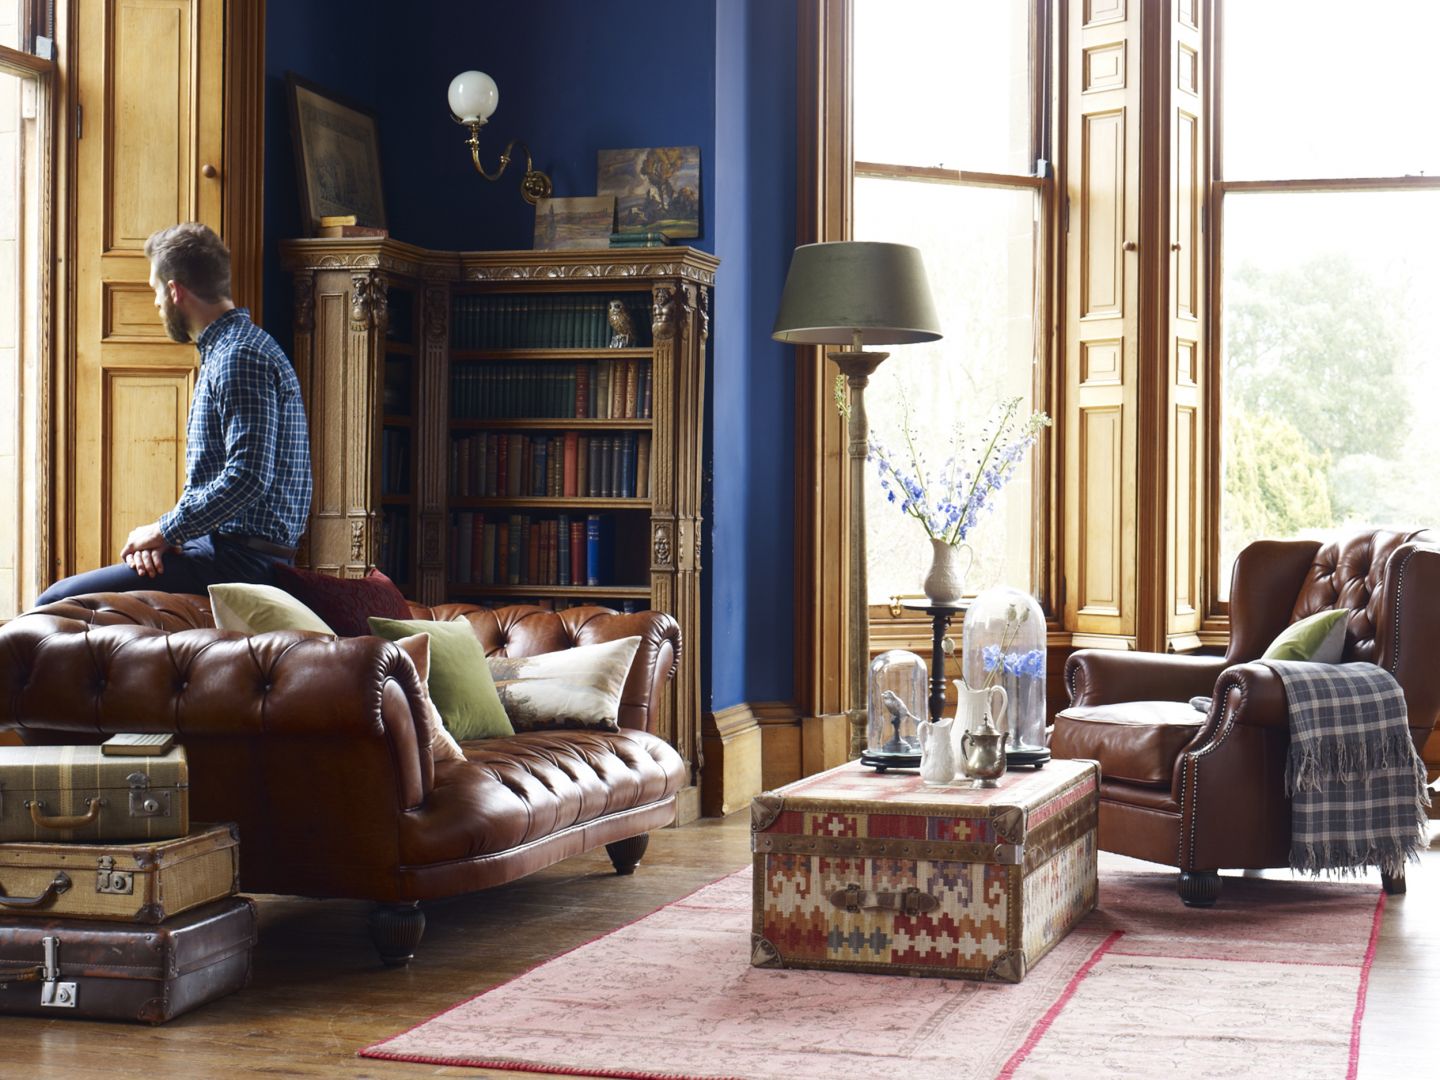 Najbardziej popularnym rodzajem sofy Chesterfield jest klasyczny niski model w kolorze orzechowego brązu. Skórzana tapicerka jest bardzo elegenacka i świetnie pasuje do industrialnych salonów. Fot. DFS